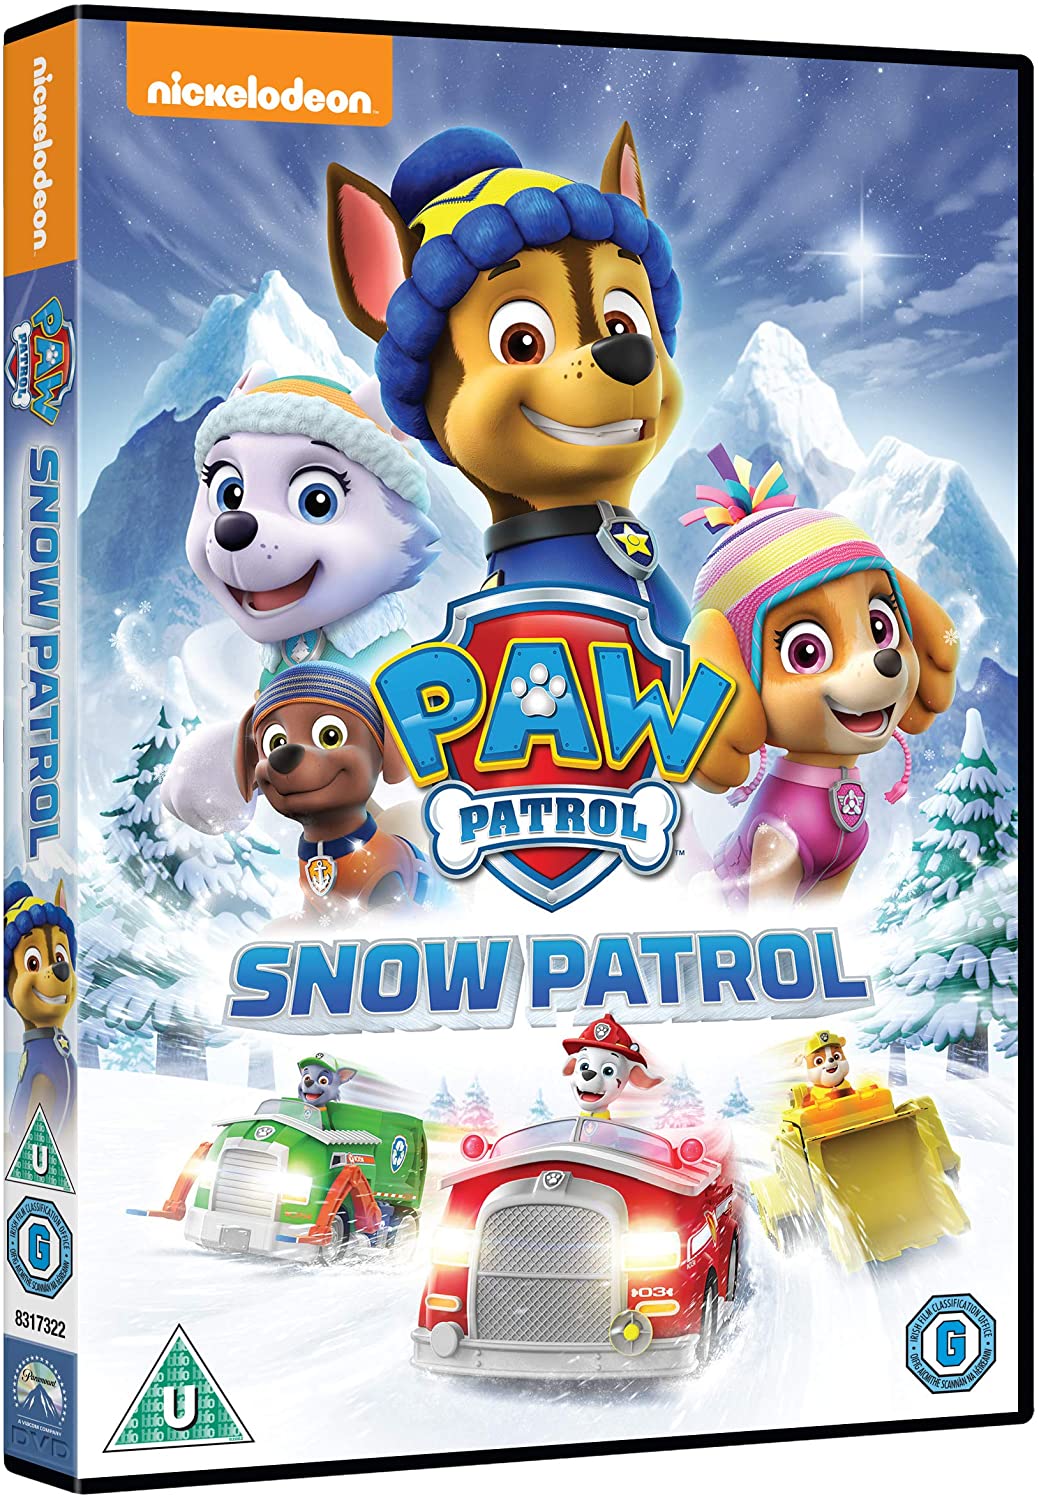 Paw Patrol: Snow Patrol [DVD]